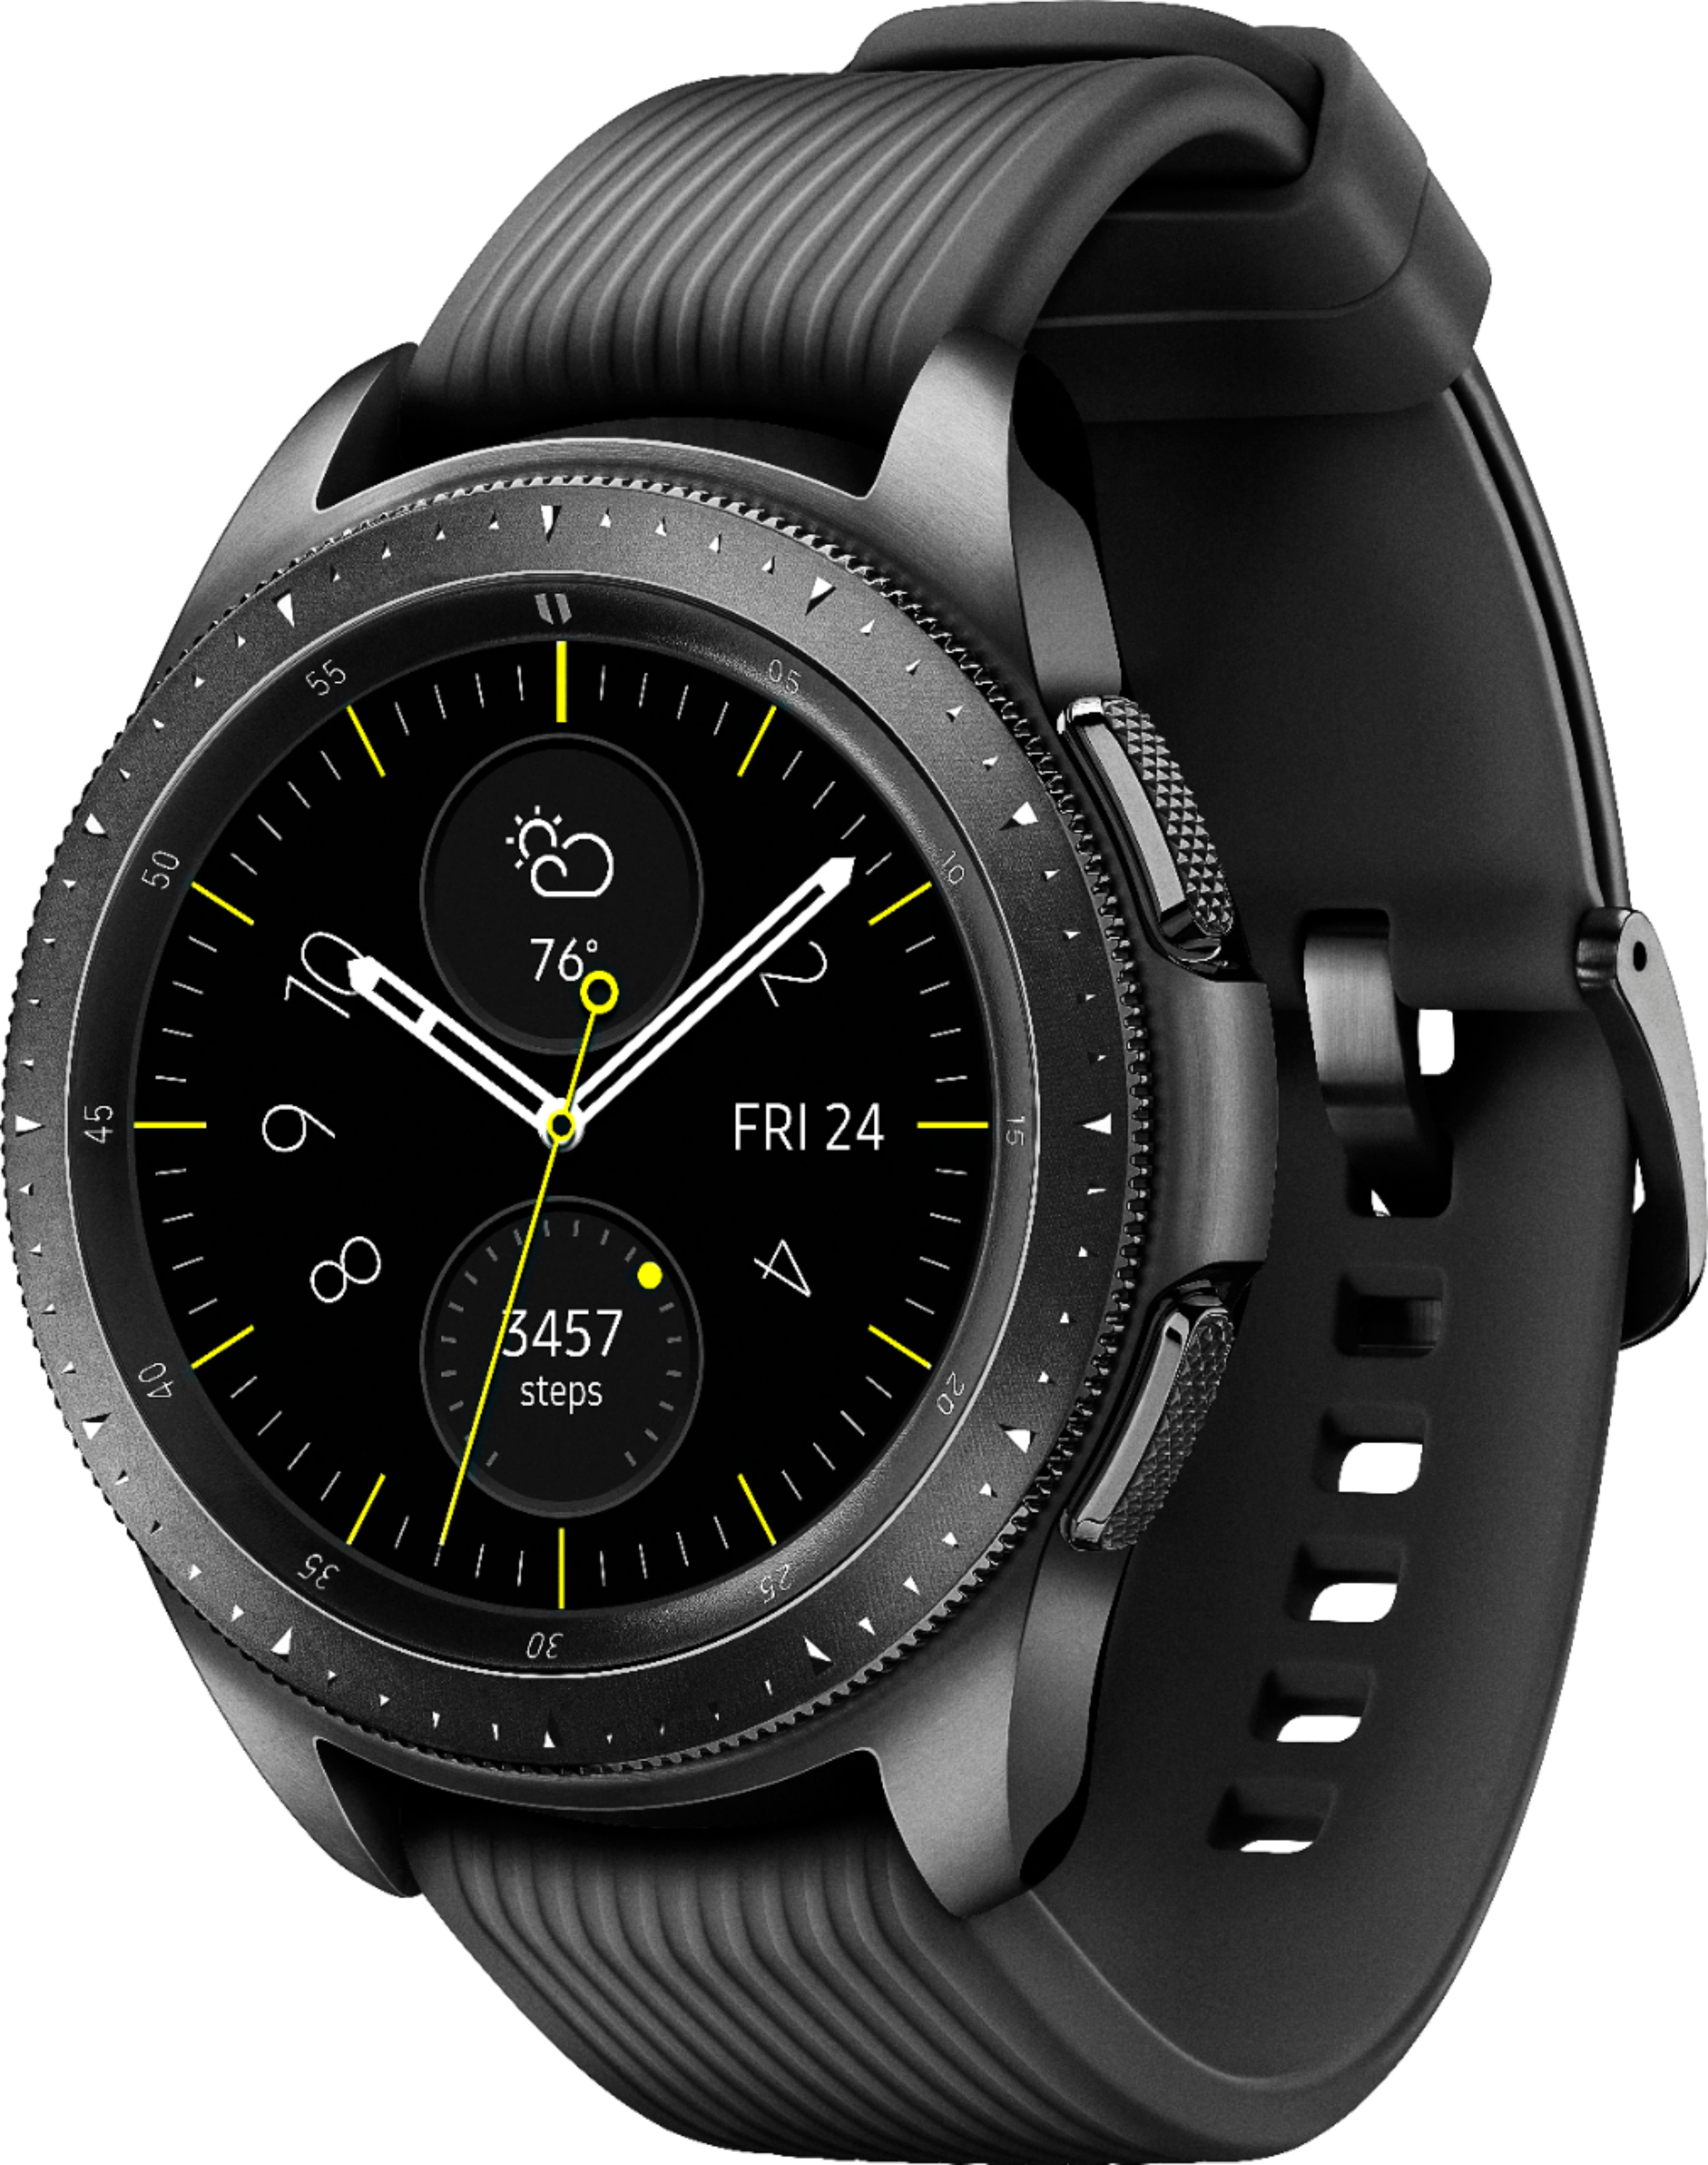 あくまでも Galaxy - Samsung Galaxy Watch 42mm ミッドナイトブラックの サムスン